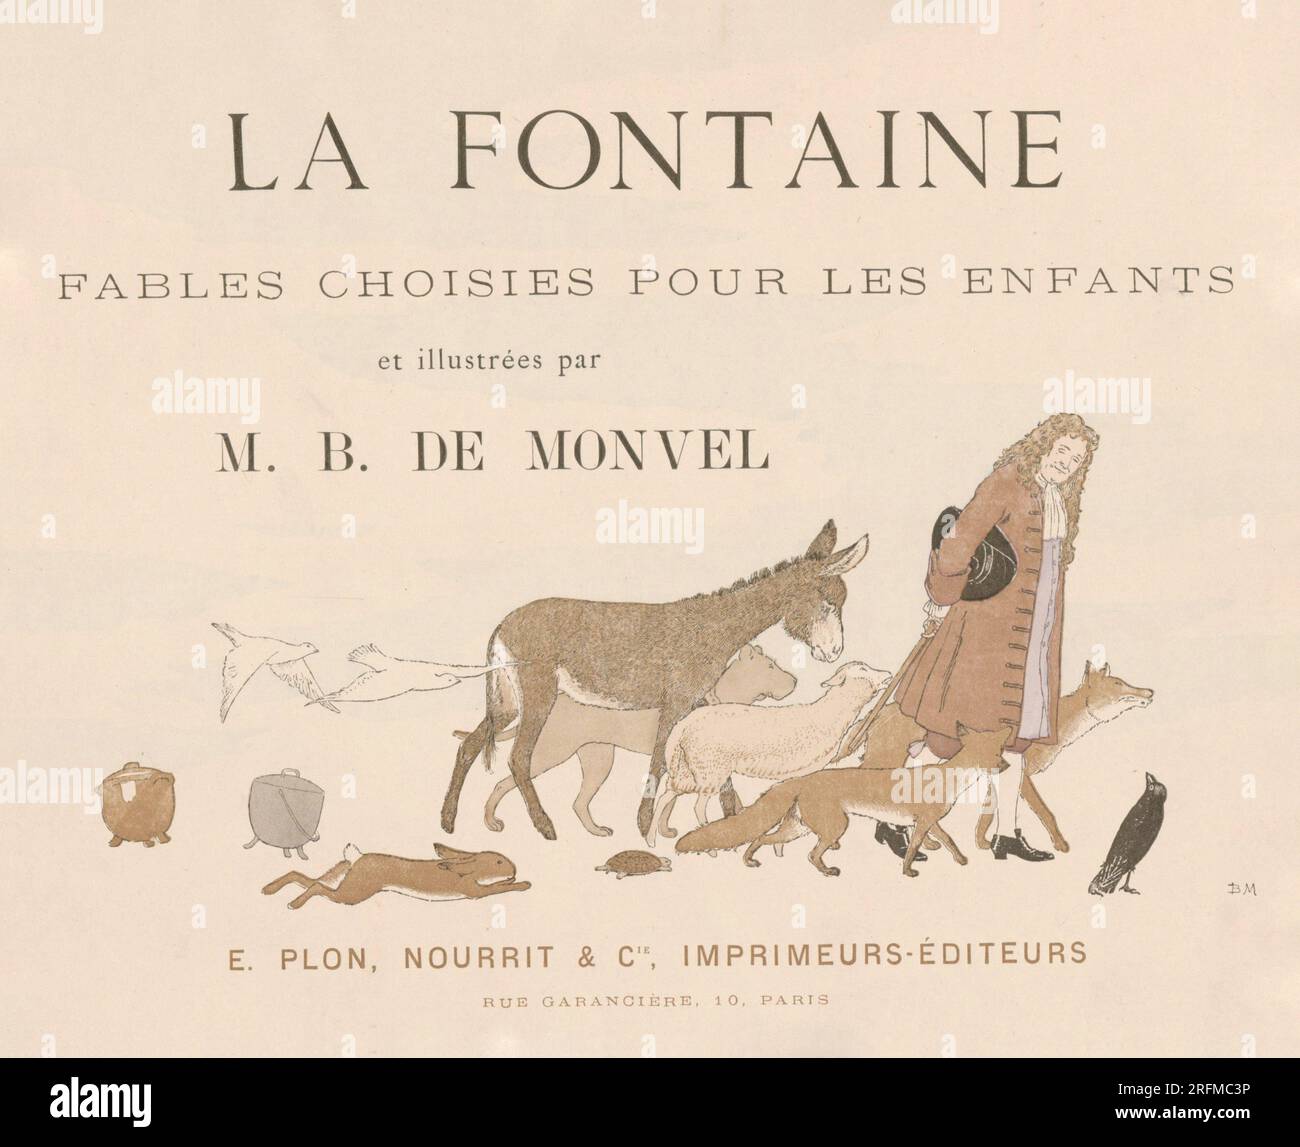 Frontespiece illustrato da Louis-Maurice Boutet de Monvel e pubblicato su "la Fontaine: Fables choisies pour les enfants" di Plon, Nourrit et Cie (Parigi), nel 1888. Foto Stock